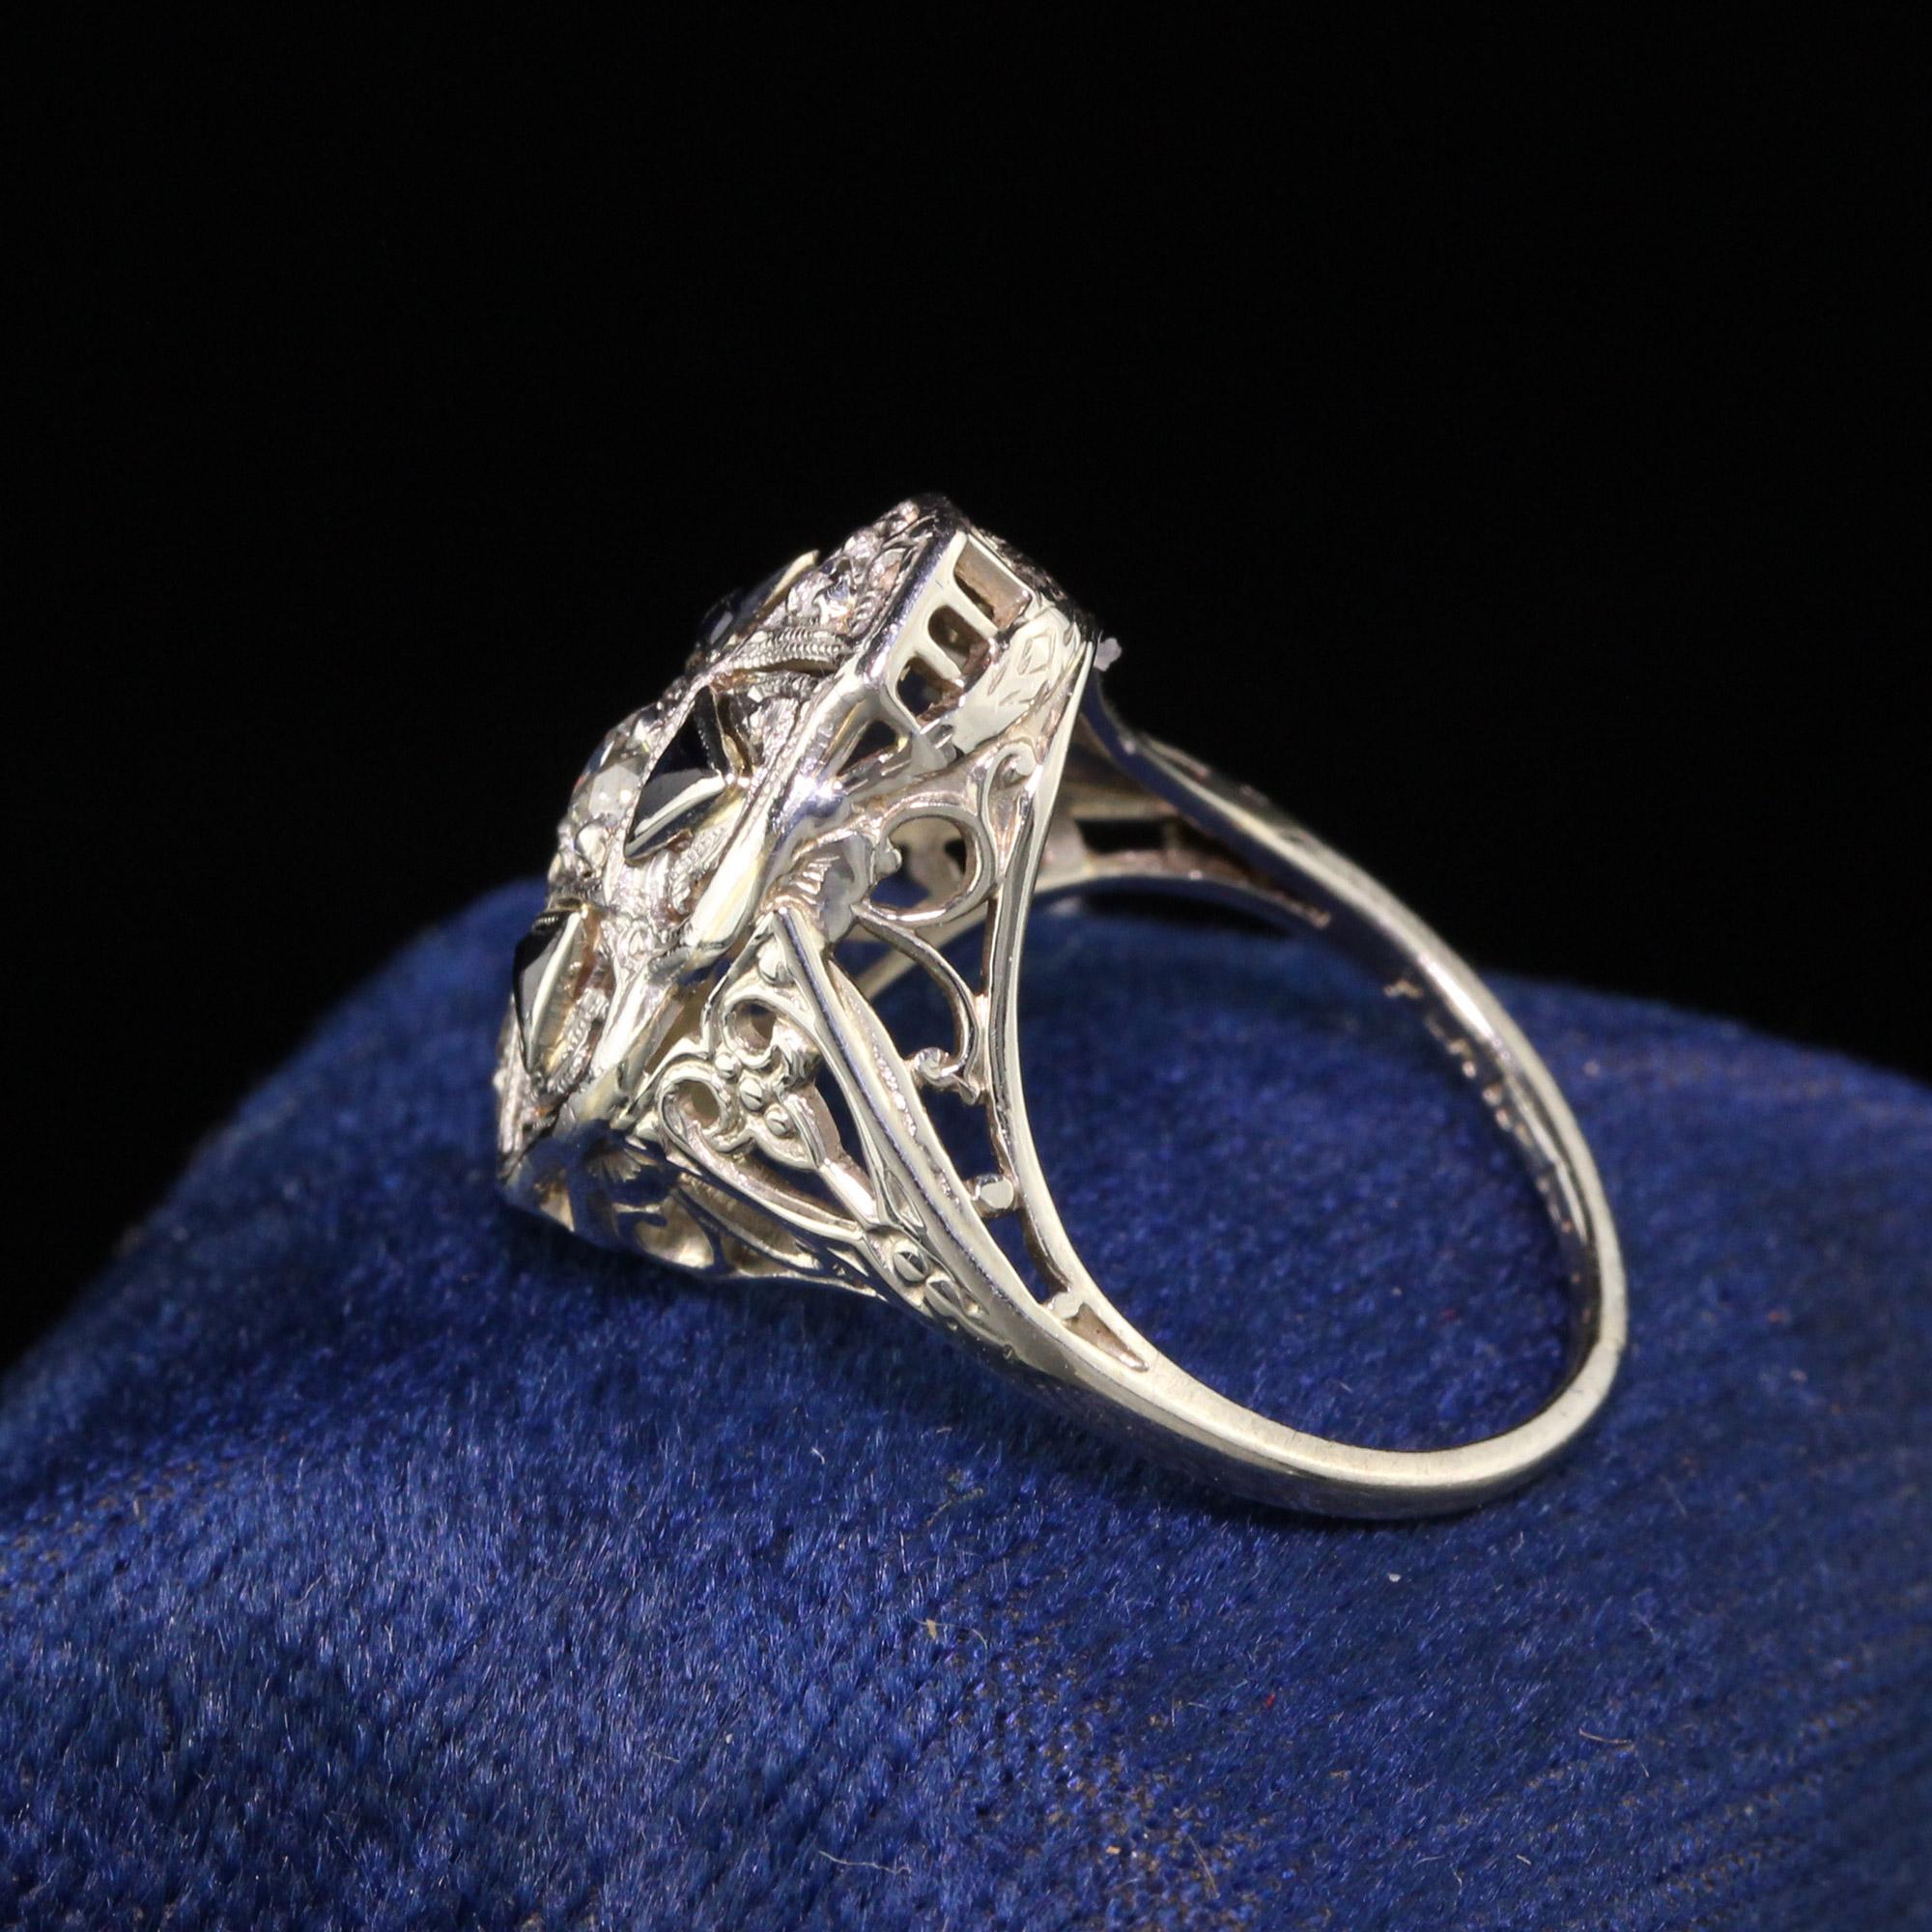 Wunderschöner antiker Art Deco 18K Weißgold Diamant und Saphir Schild Ring. Dieser schöne Art Deco Schild Ring zeigt erstaunliche alte europäische Diamanten und Saphire auf einem filigranen Weißgold Art Deco Ring. 

Artikel #R0622

Metall: 18K